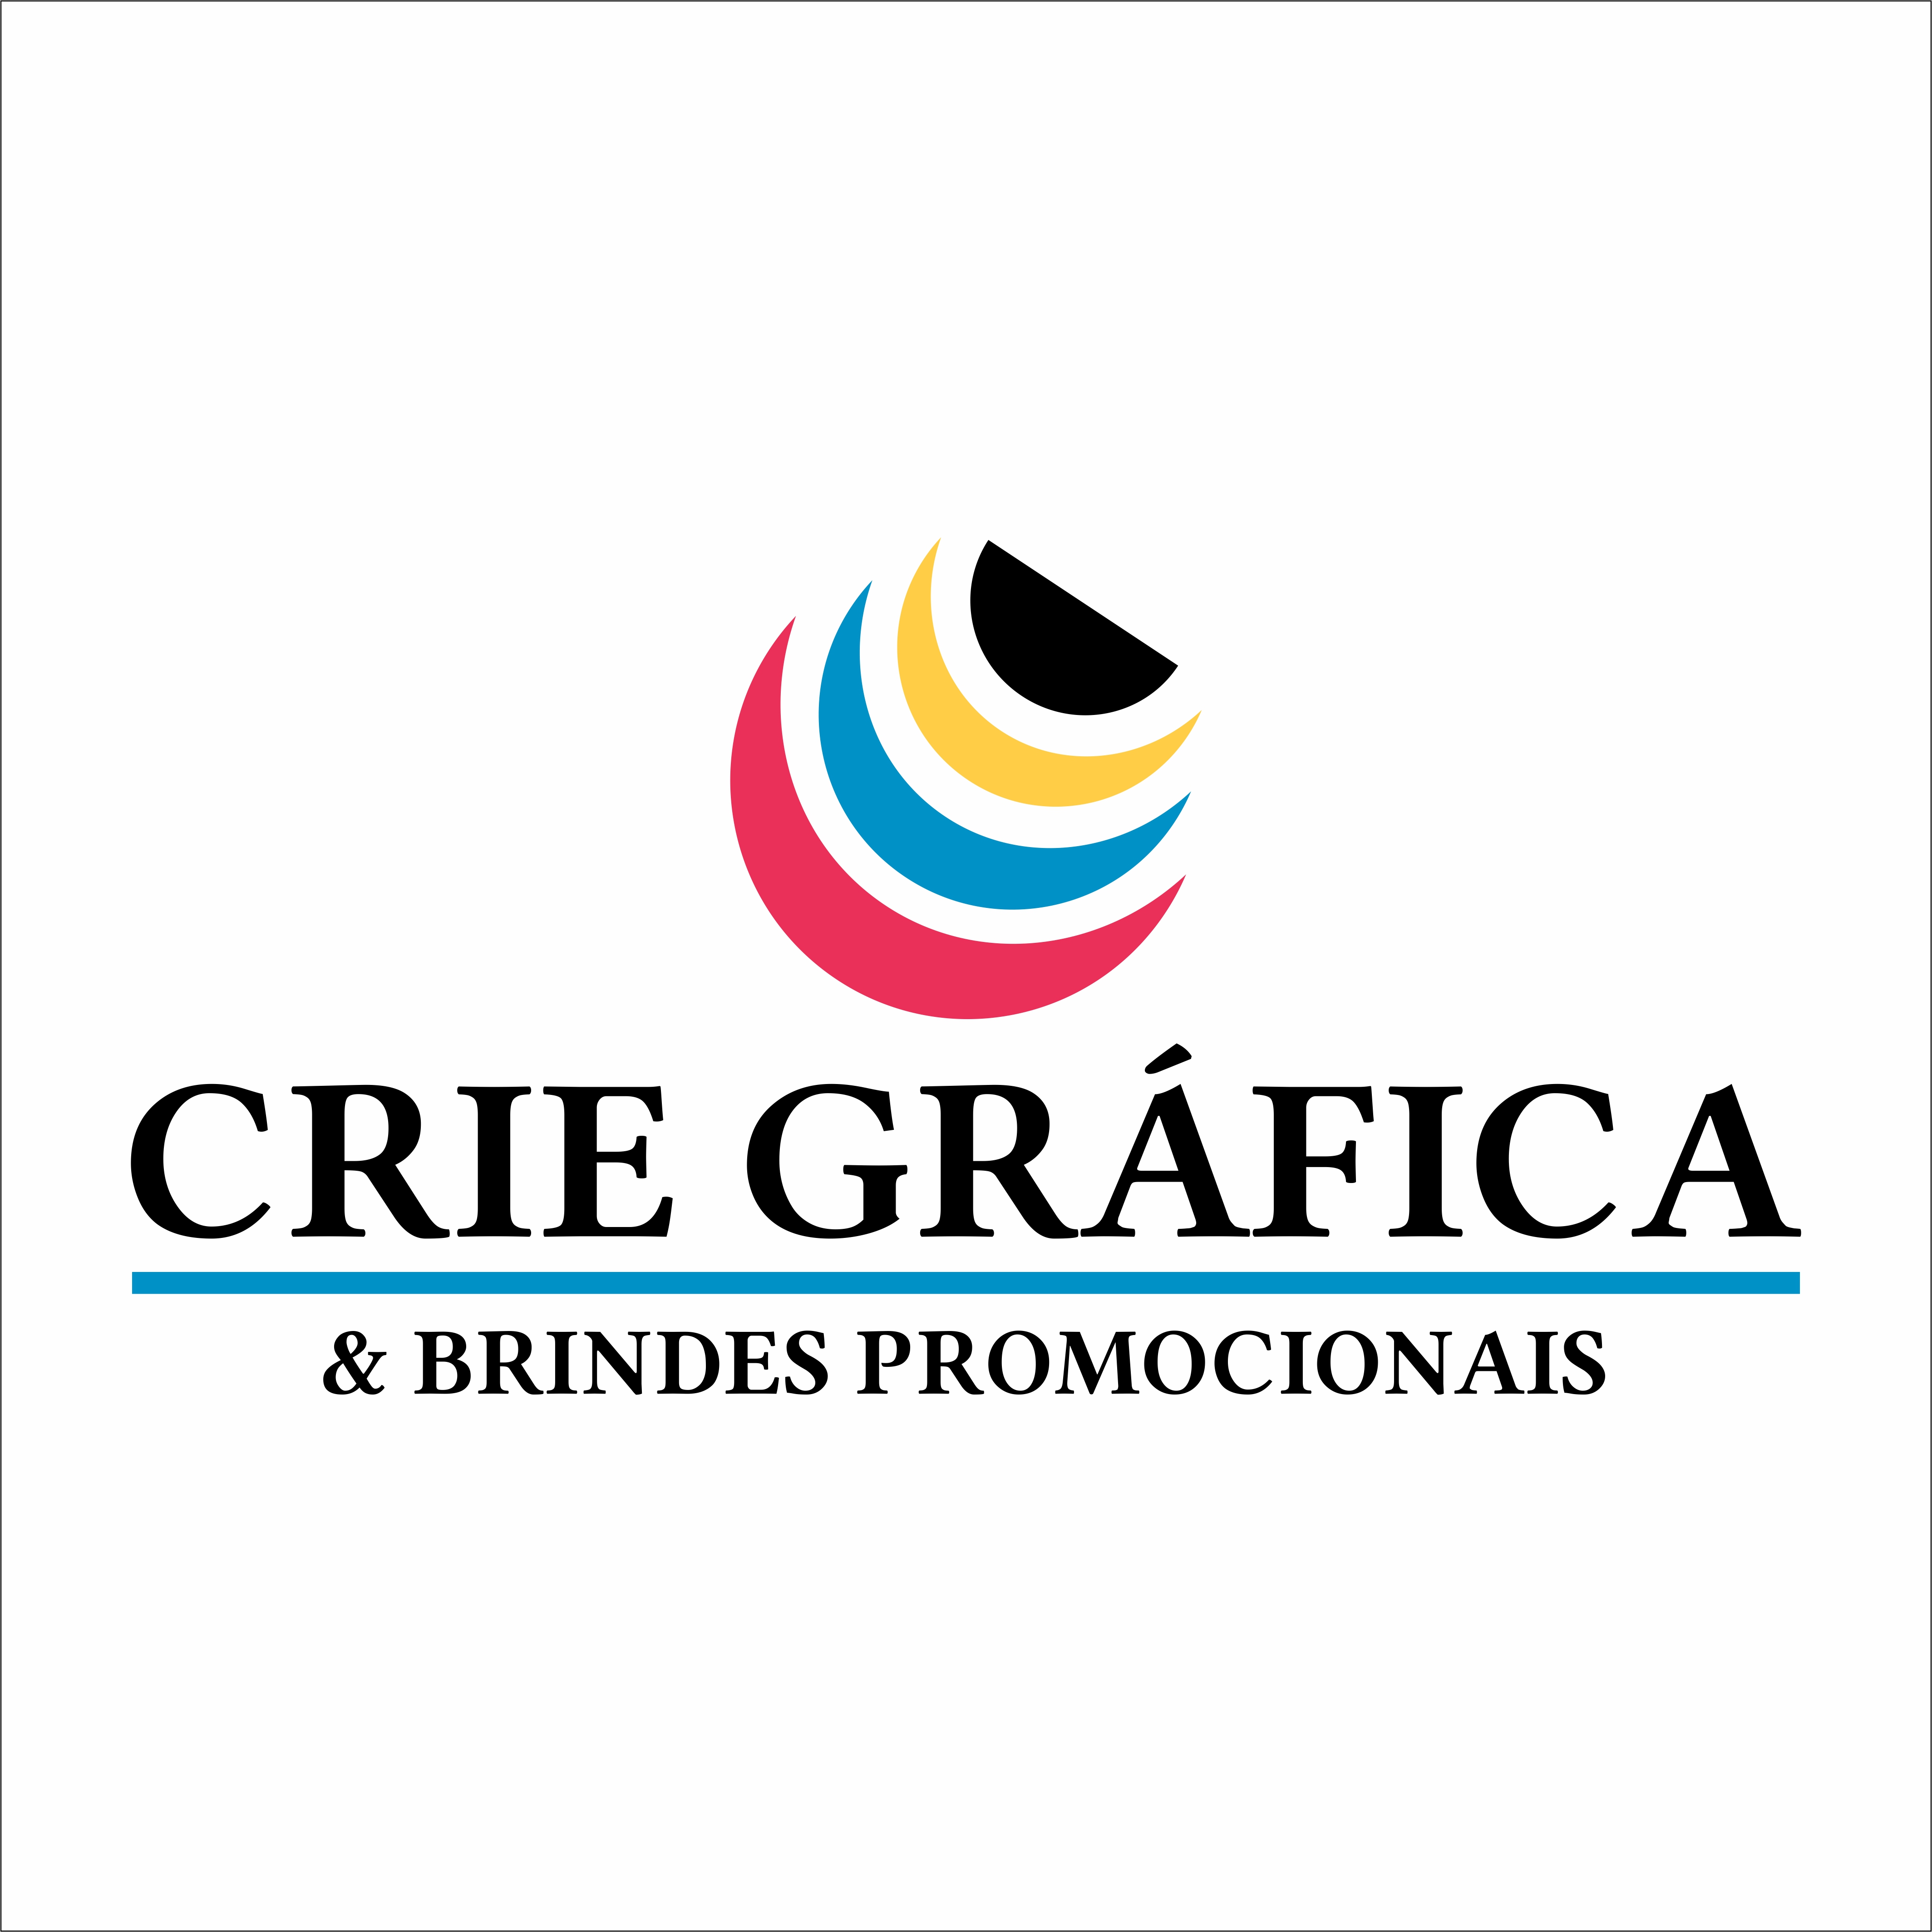 CRIE BRINDES & GRAFICA 